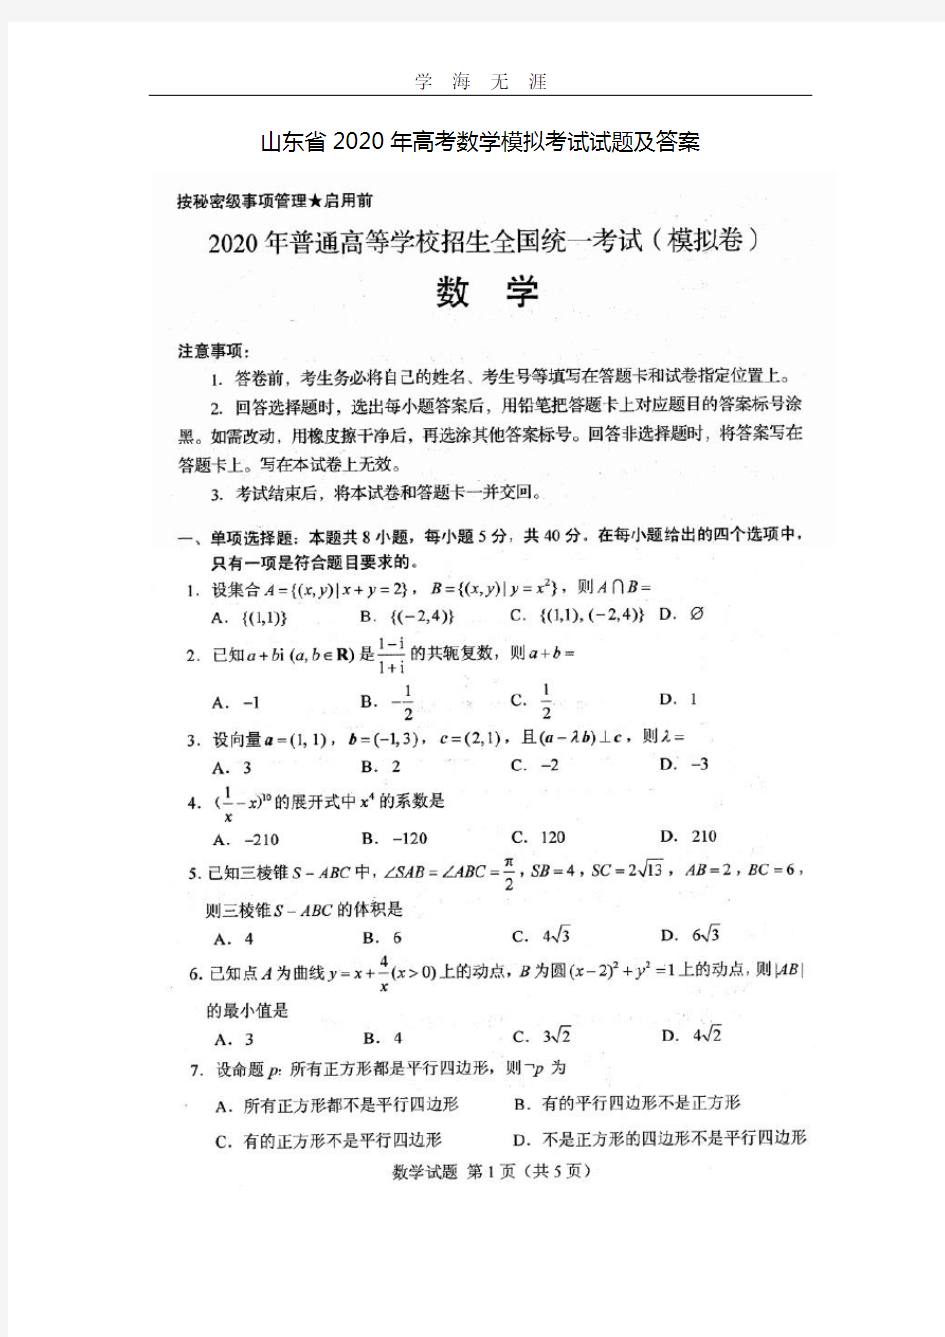 山东省高考数学模拟考试试题及答案(2020年整理).doc